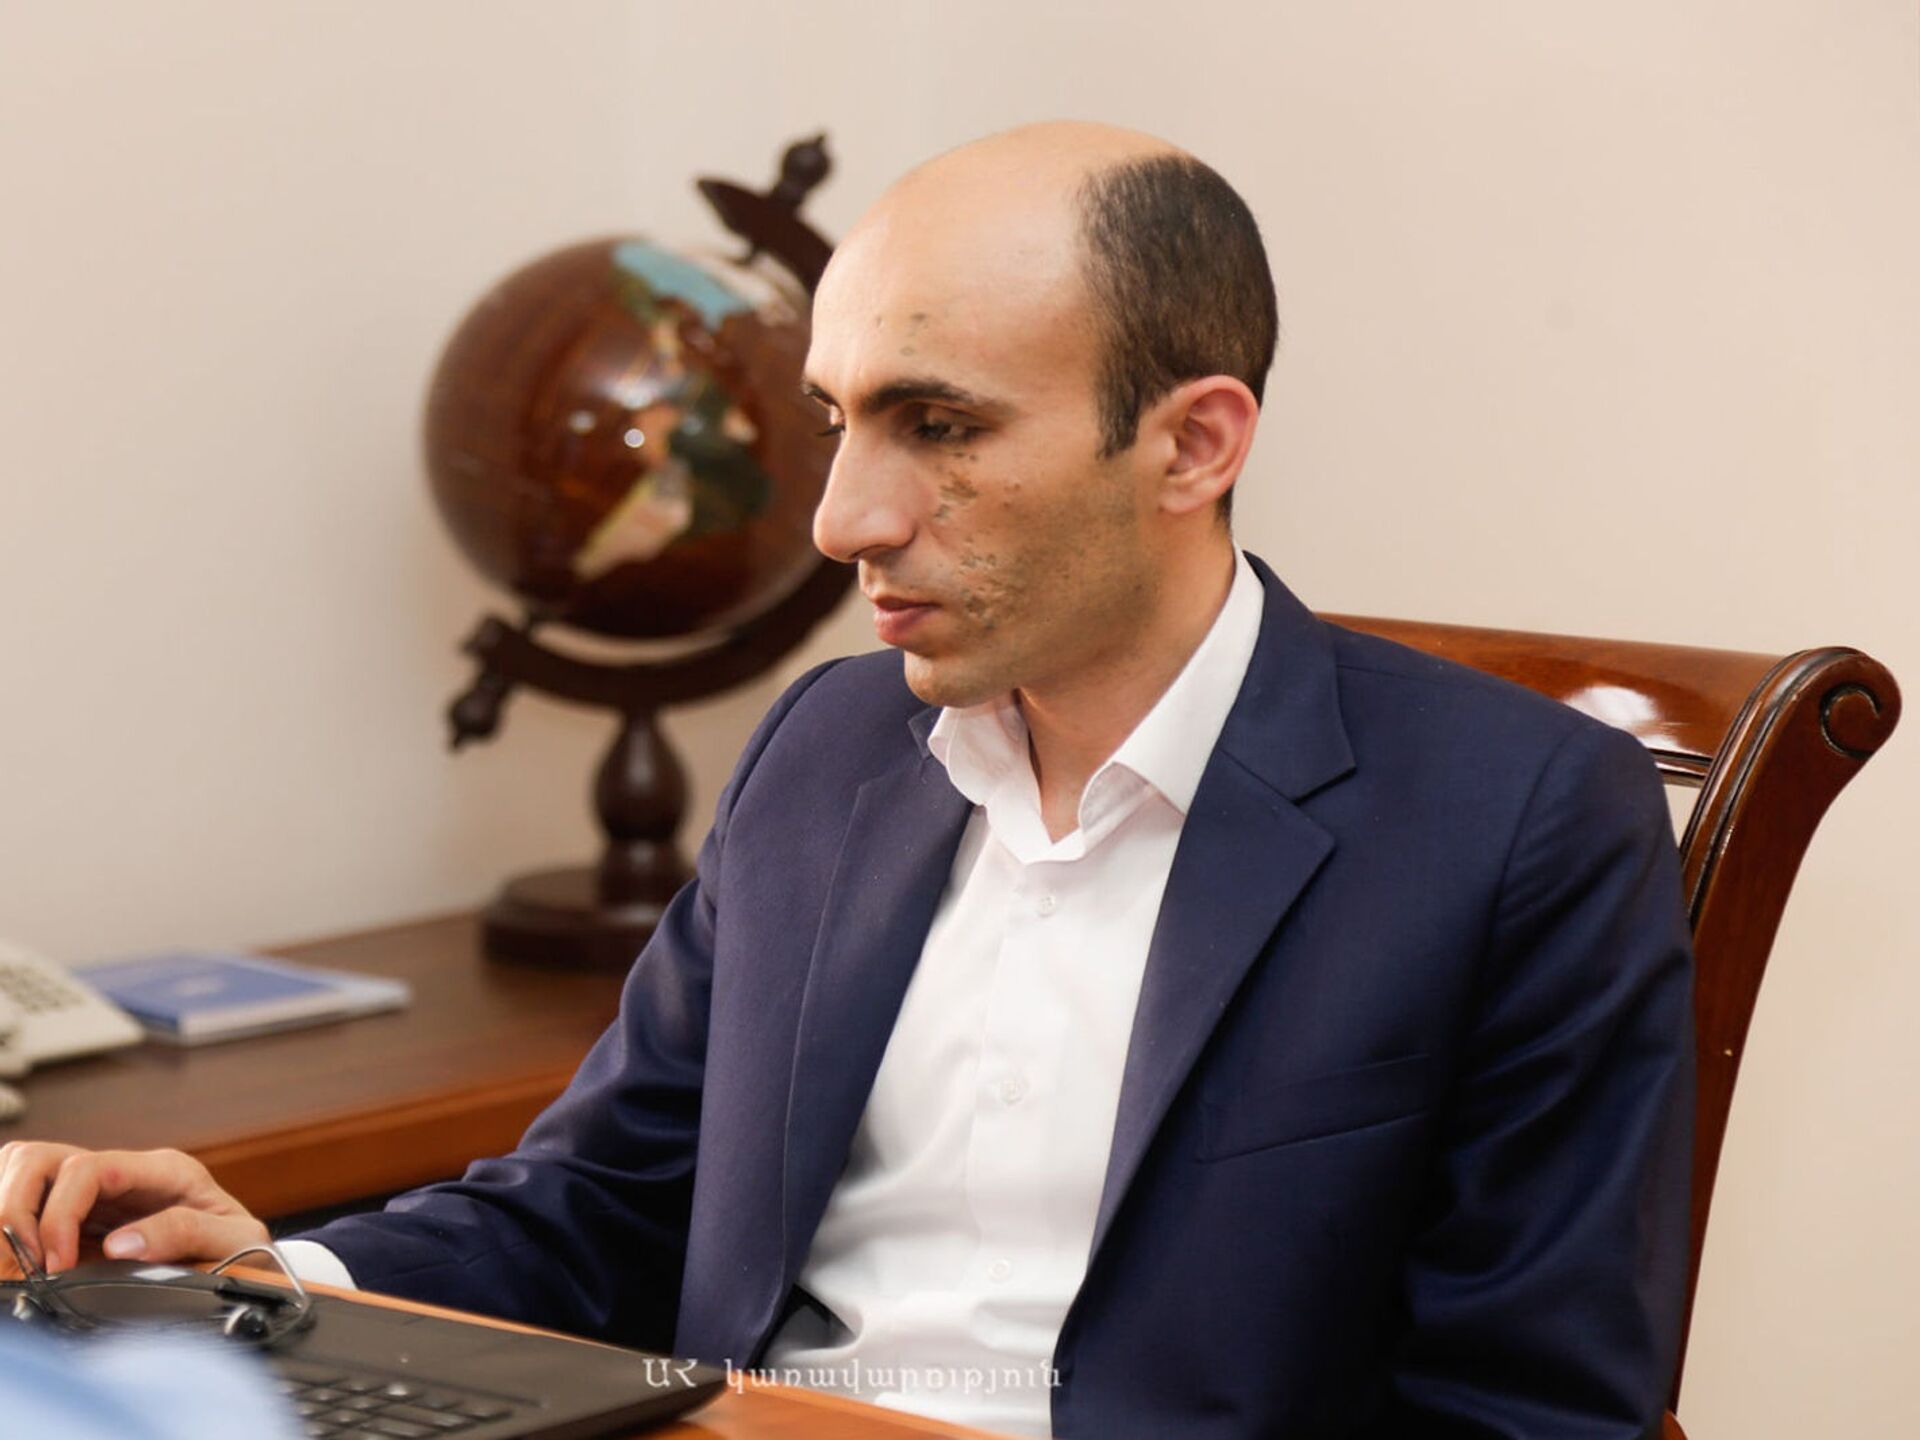 Власти Азербайджана боятся правды: госминистр Арцаха о блокировке РИА Новости в Баку